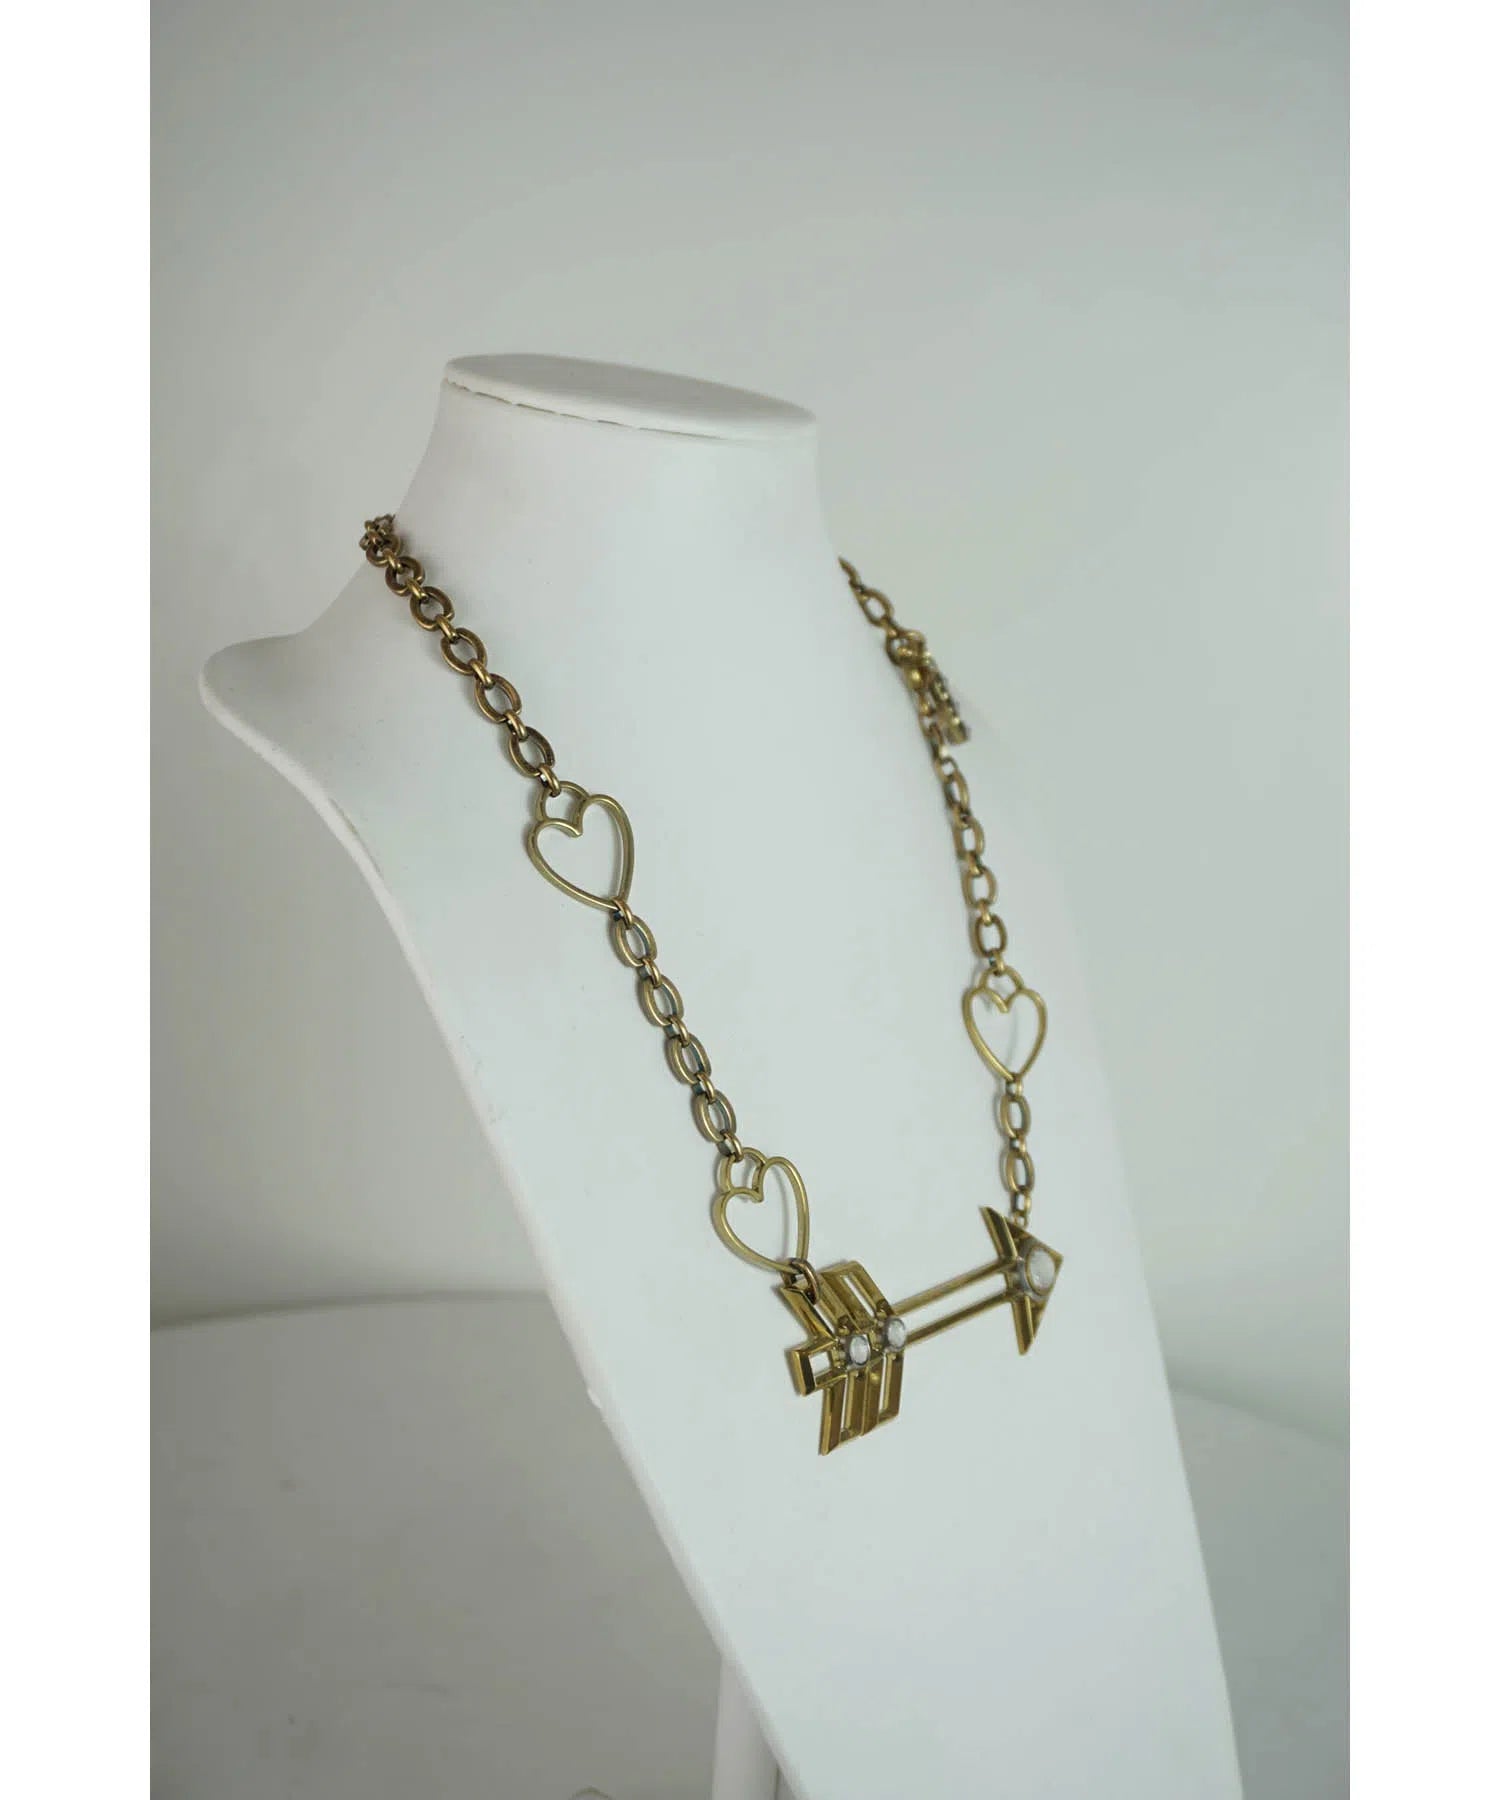 Lanvin Cupid's Arrow Necklace 2014